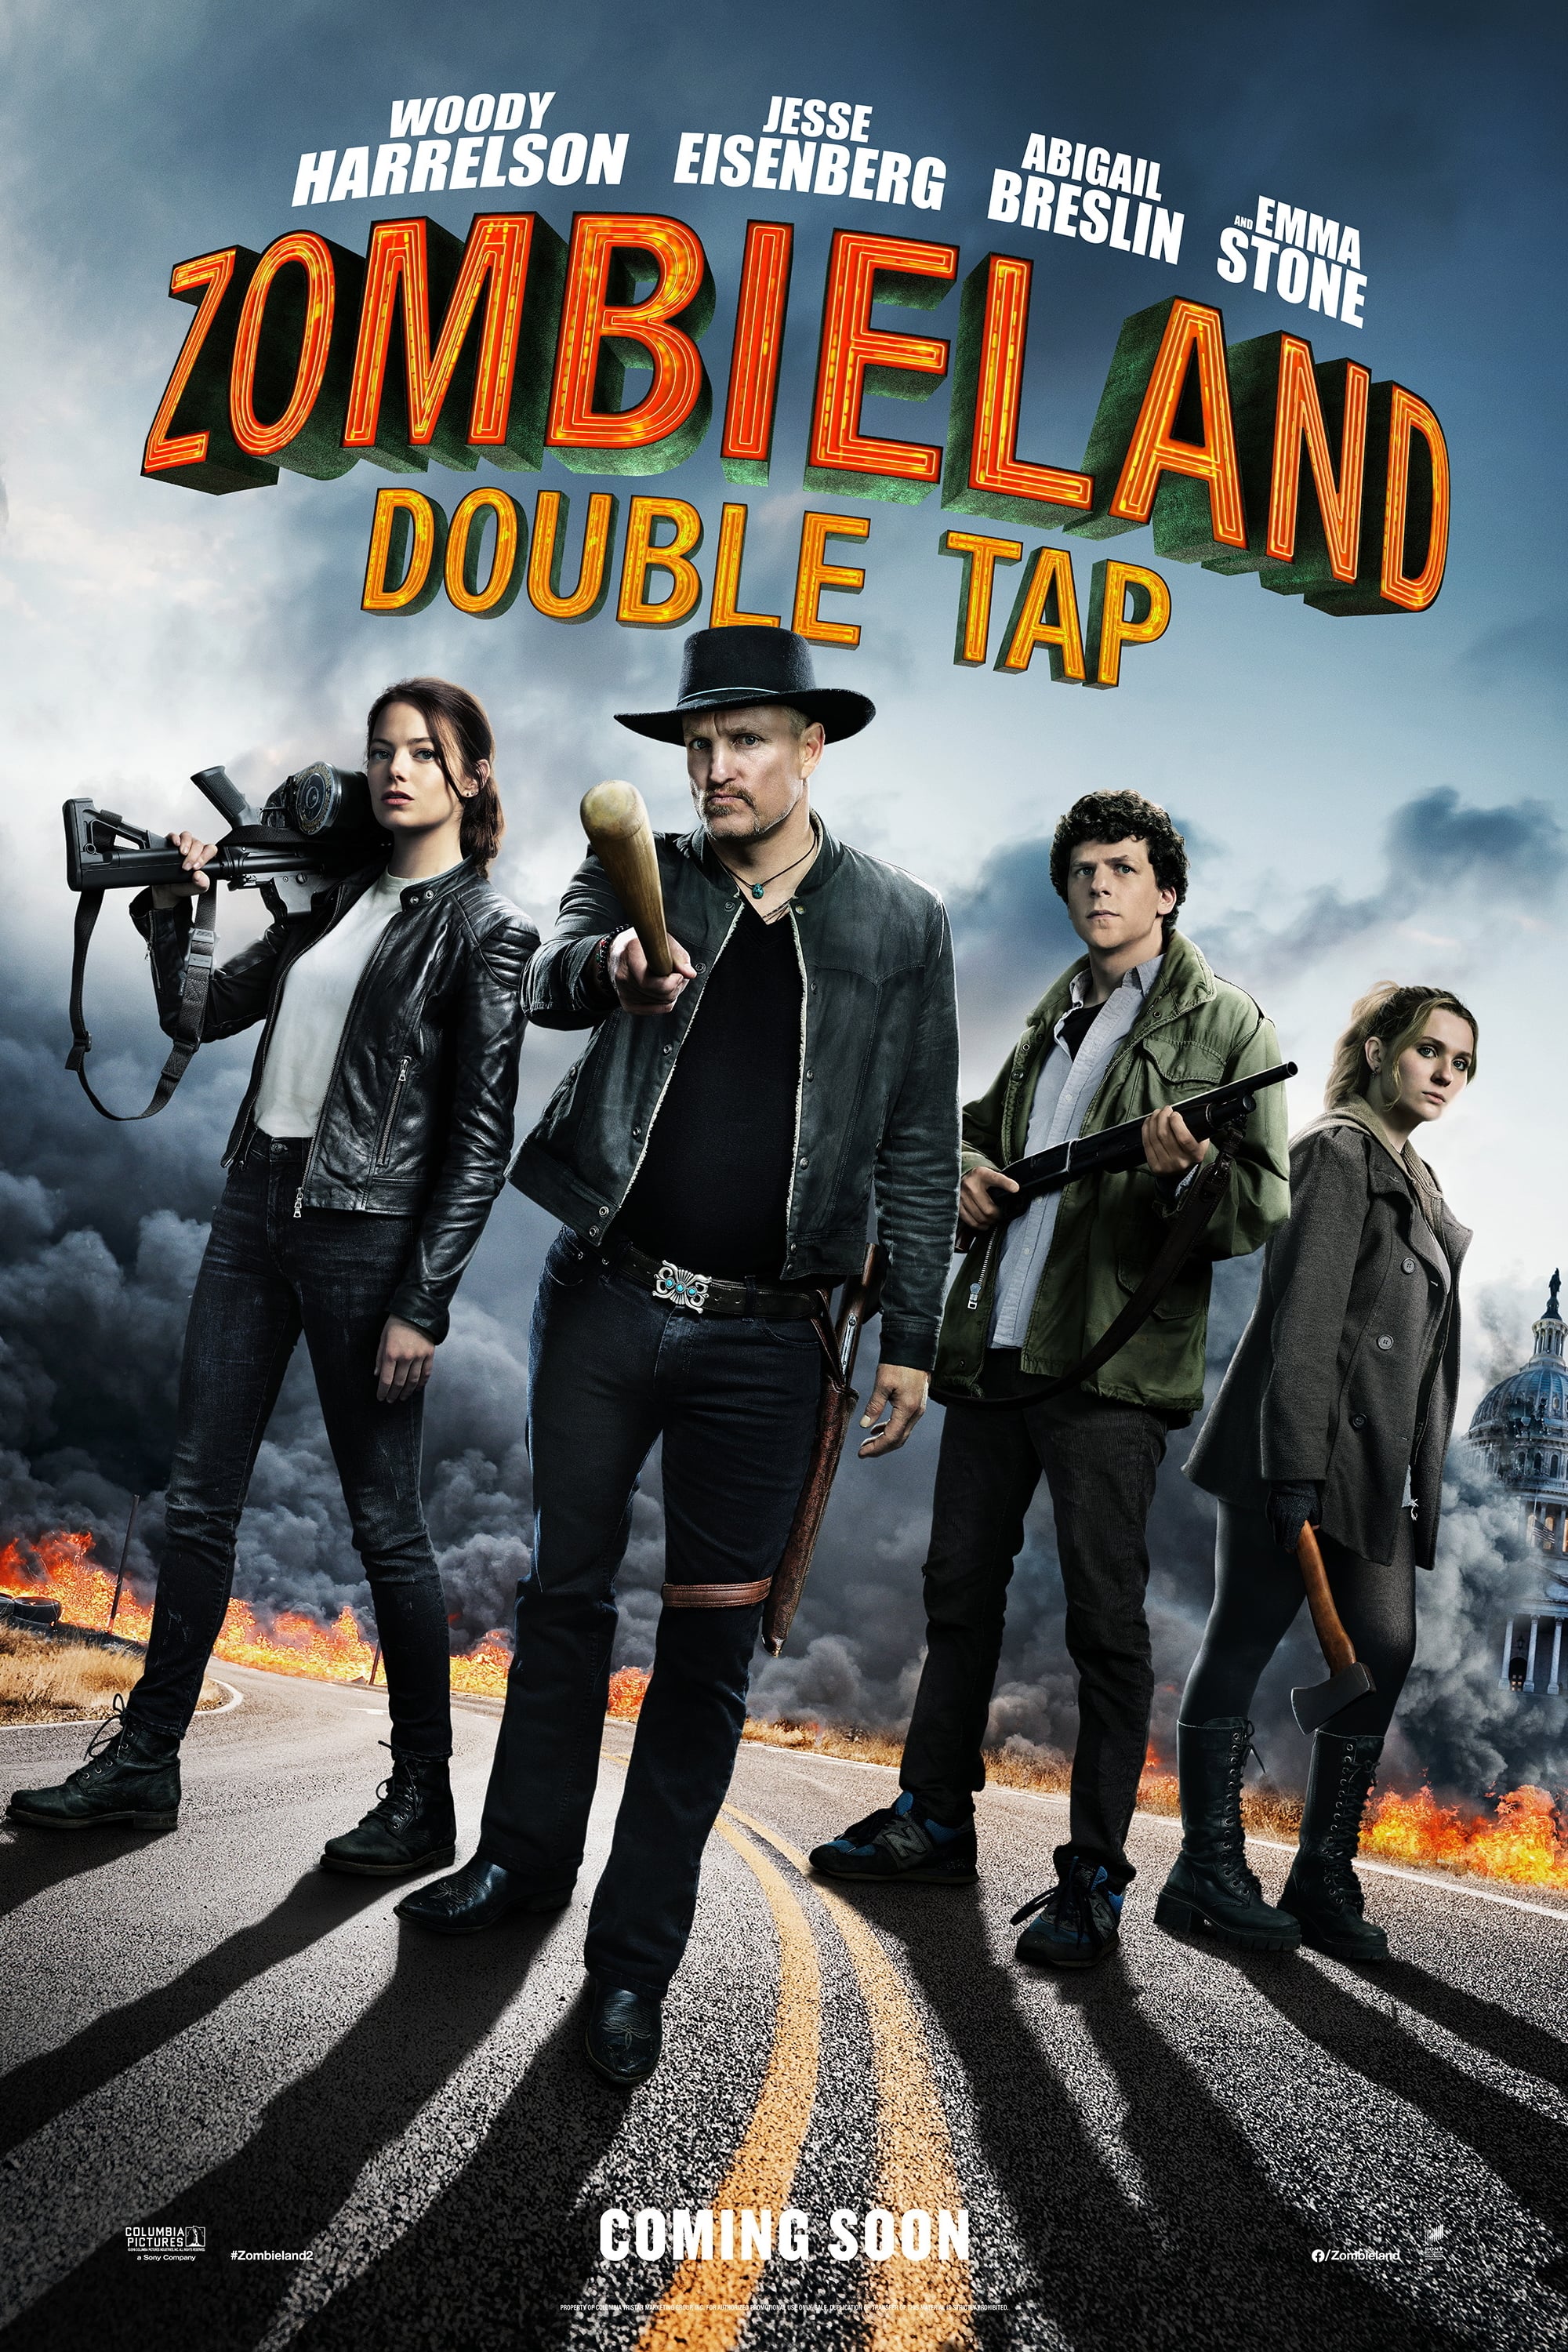 Plakat von "Zombieland 2: Doppelt hält besser"